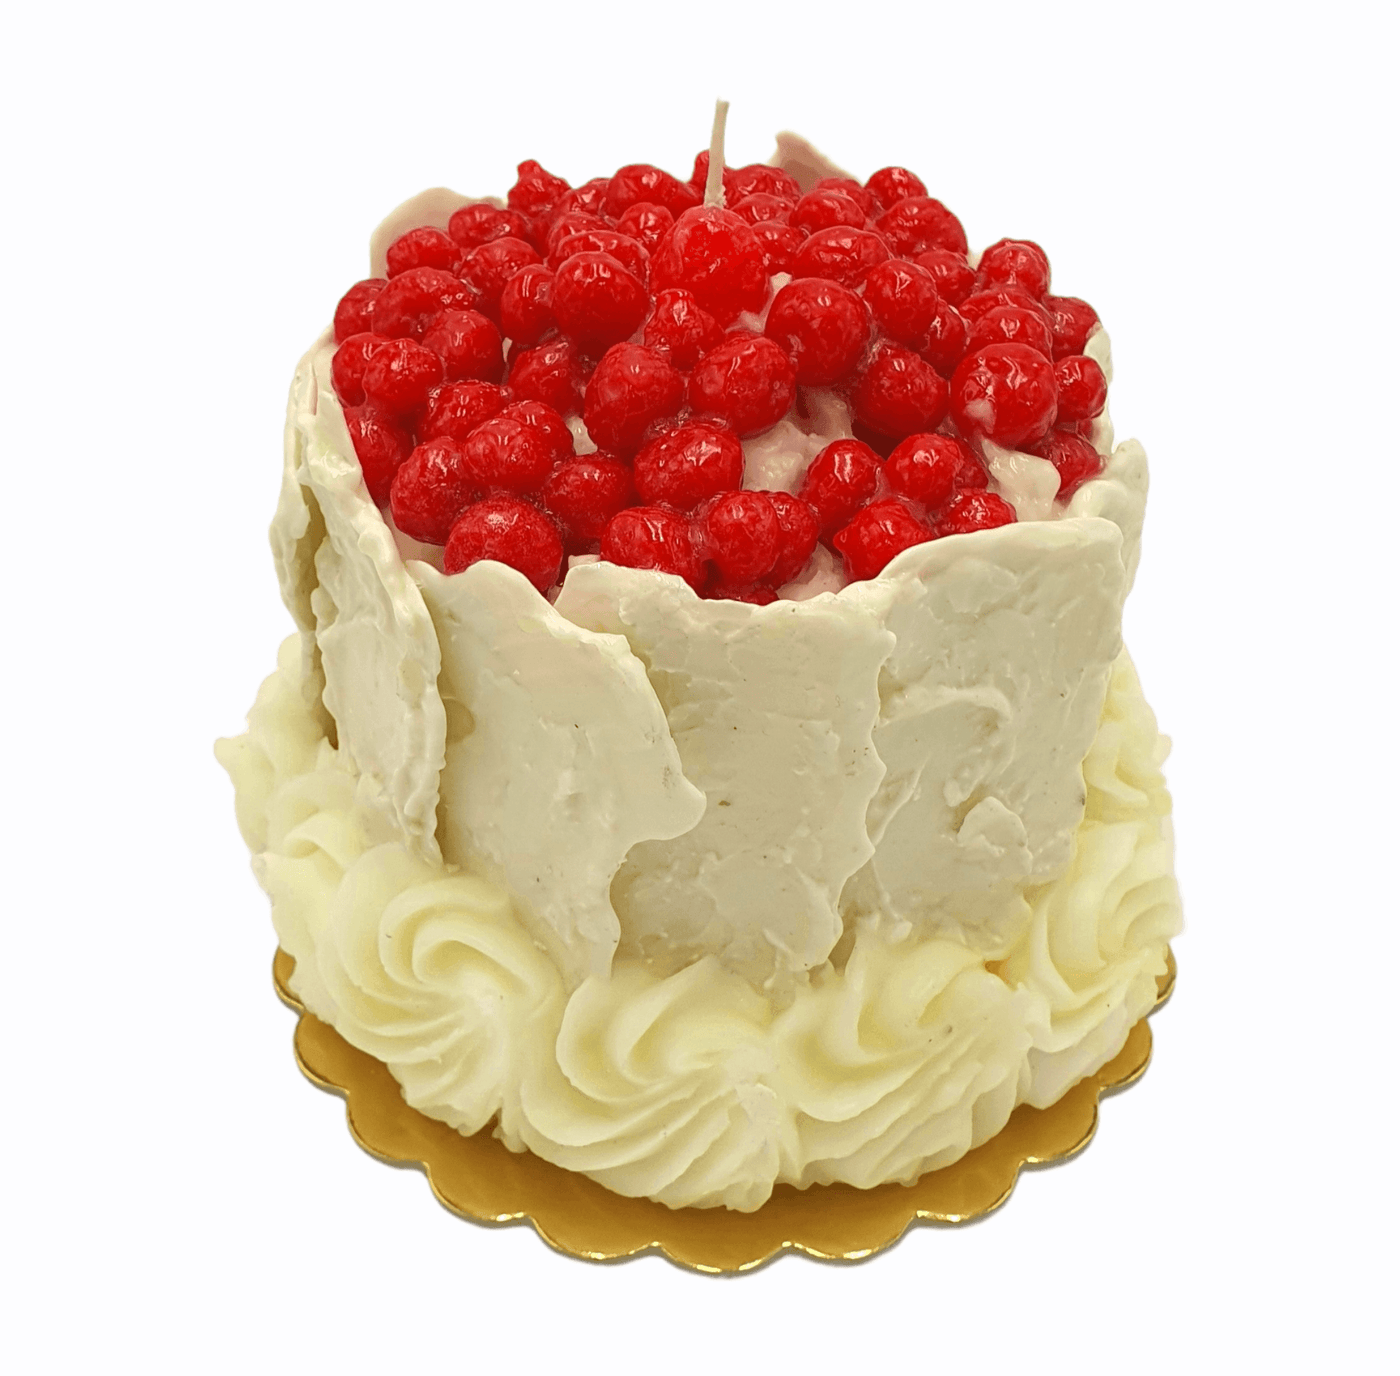 Cereria - Kerze in Form eines Layered Cake mit weißer Schokolade | Ø 18 cm - Codeso Living